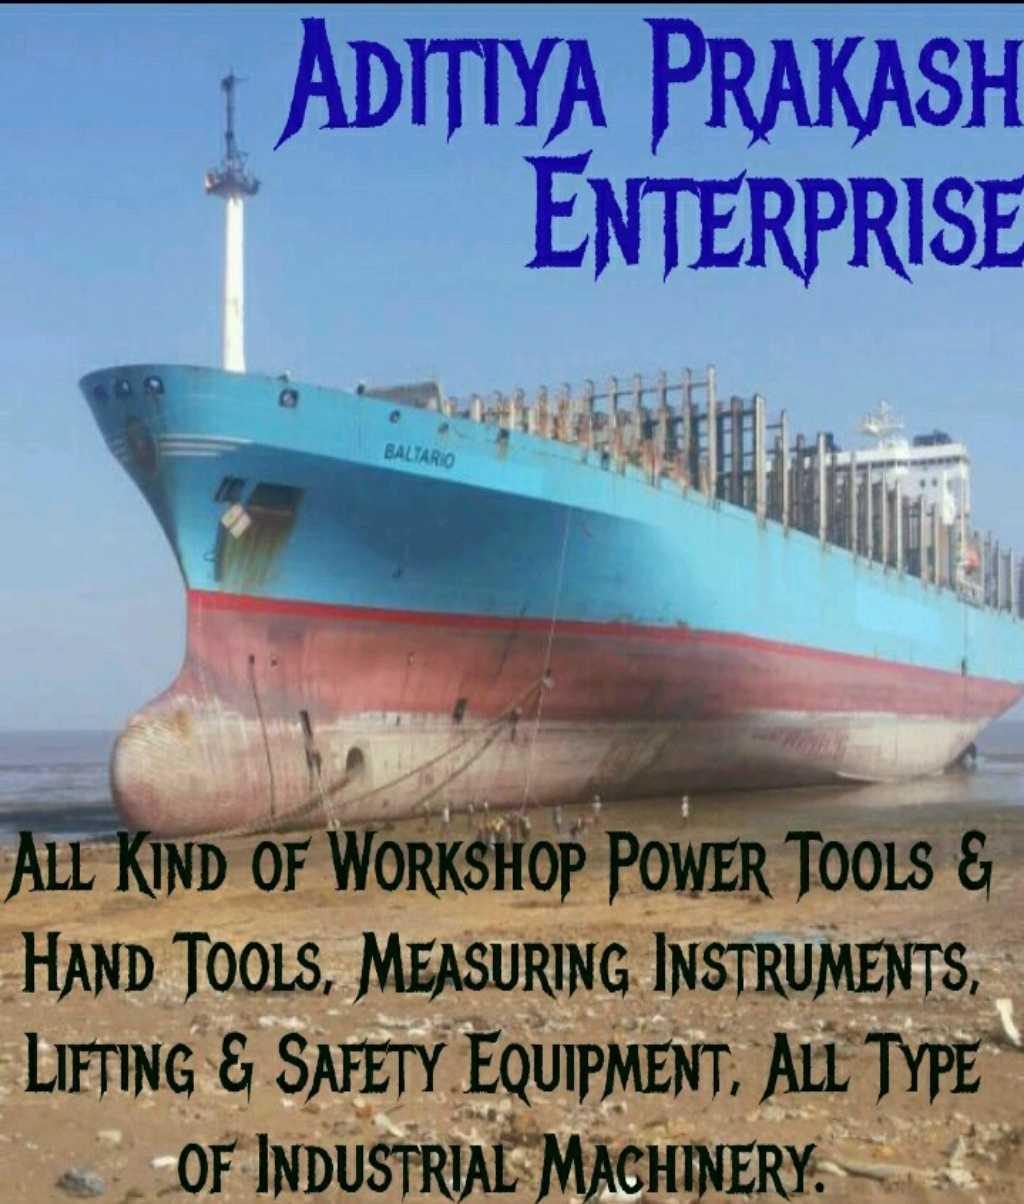 Aditiya Prakash Enterprise